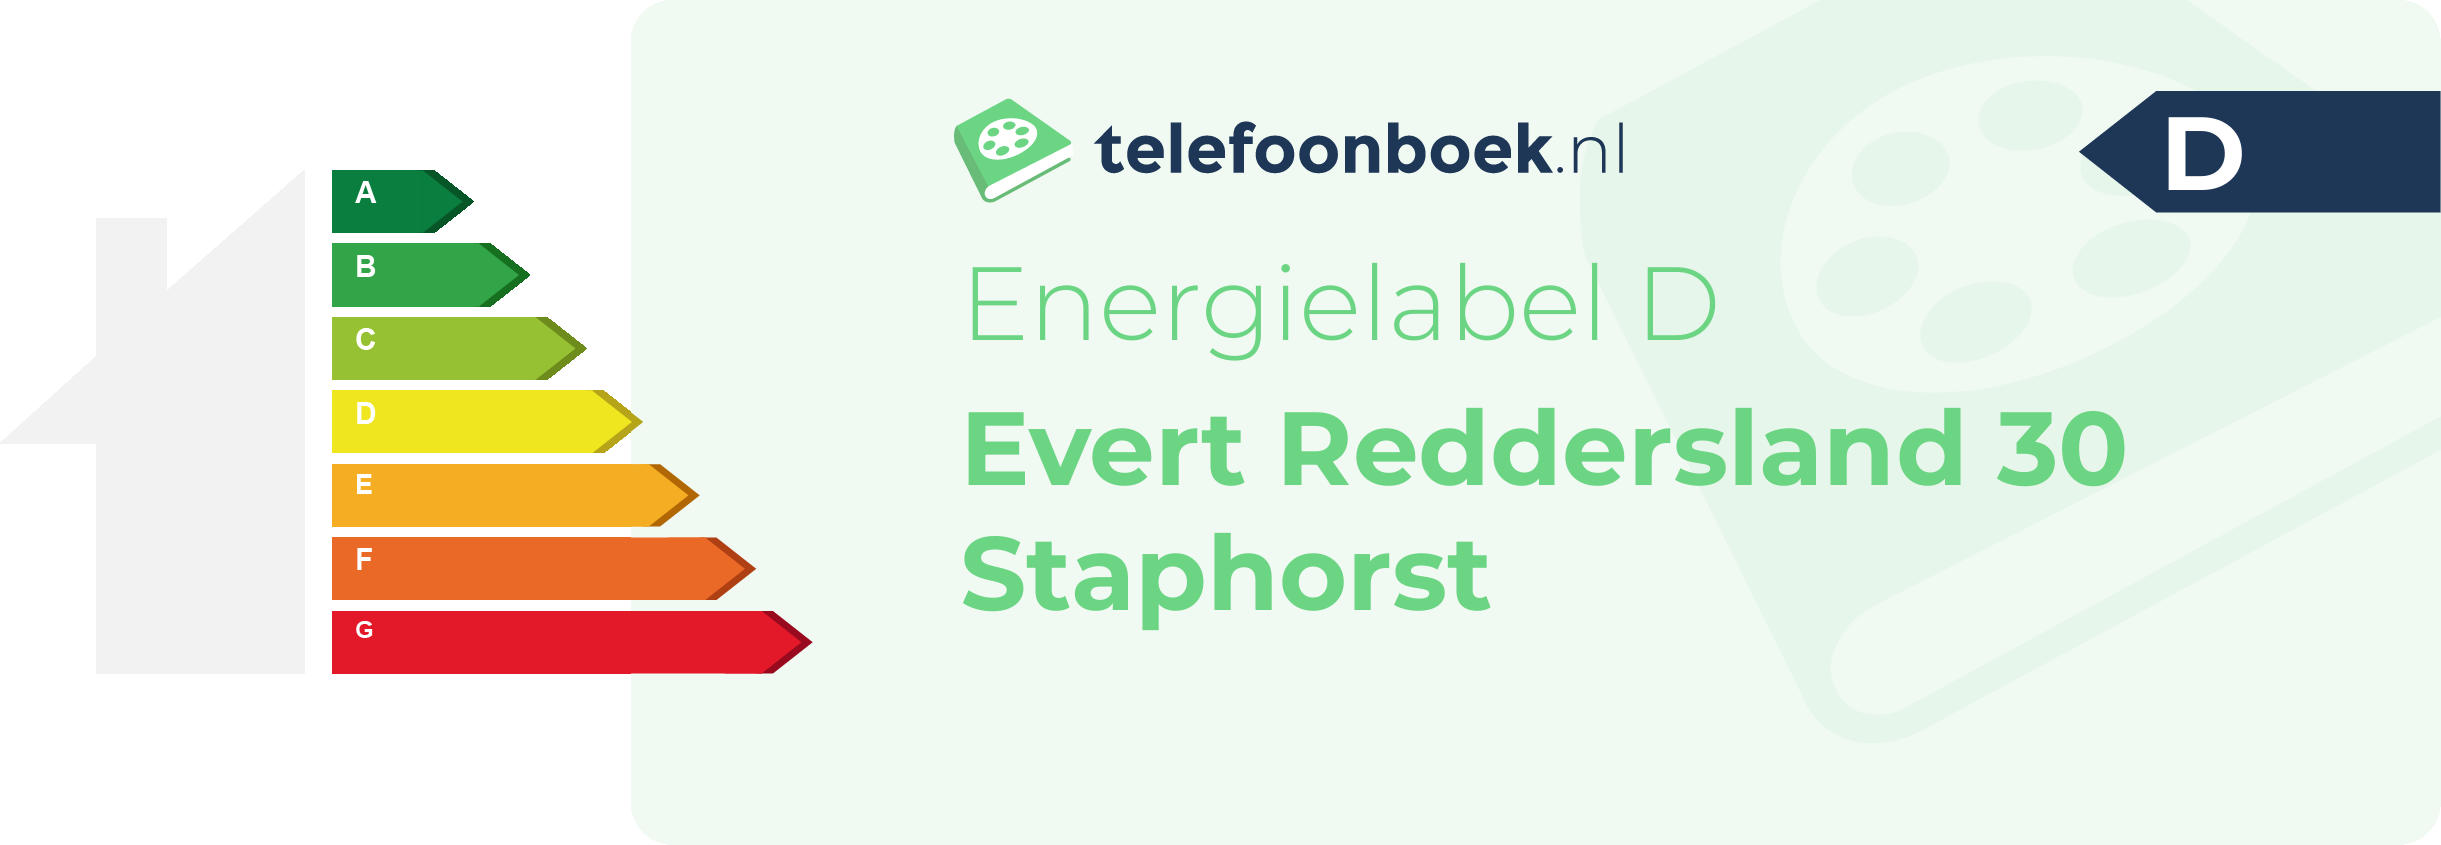 Energielabel Evert Reddersland 30 Staphorst